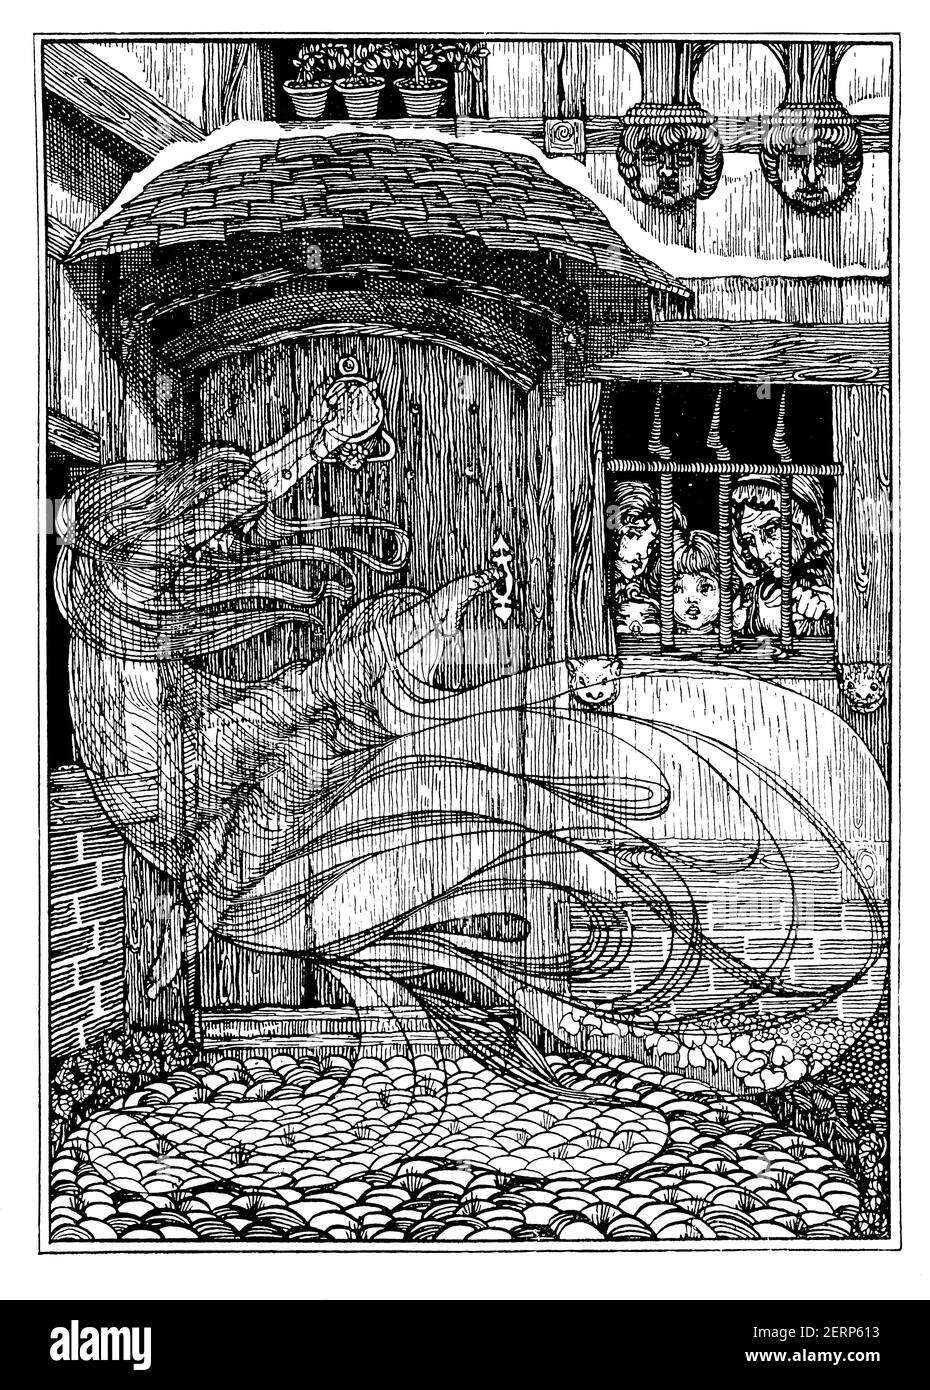 Aparición fantasmal en la puerta principal, diseño Art nouveau de la ilustradora y bordadora británica Christine Drummond Angus (más tarde Angus-Sickert), desde 1900 Foto de stock